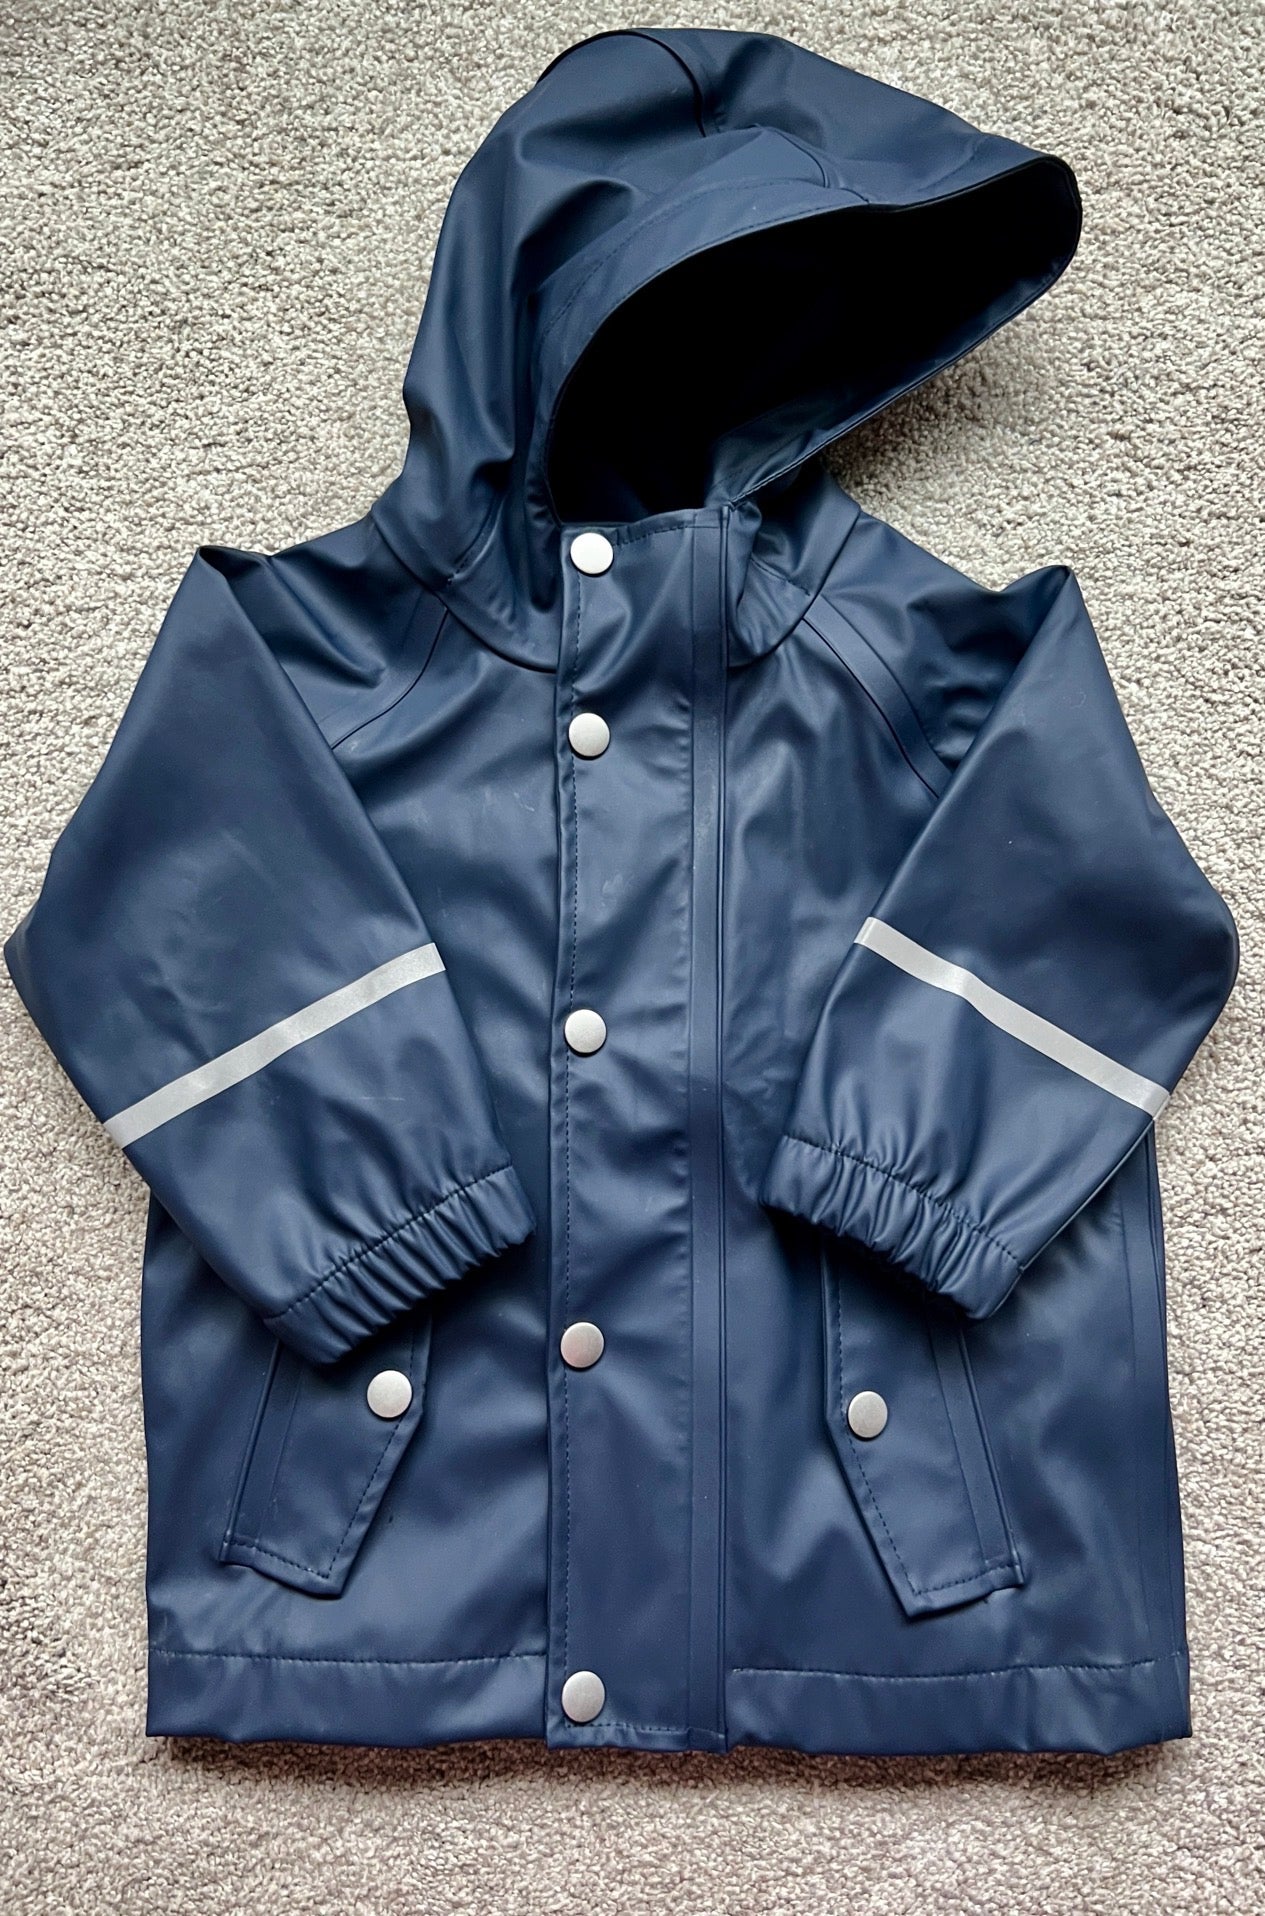 Hanna navy raincoat, 2T, EUC